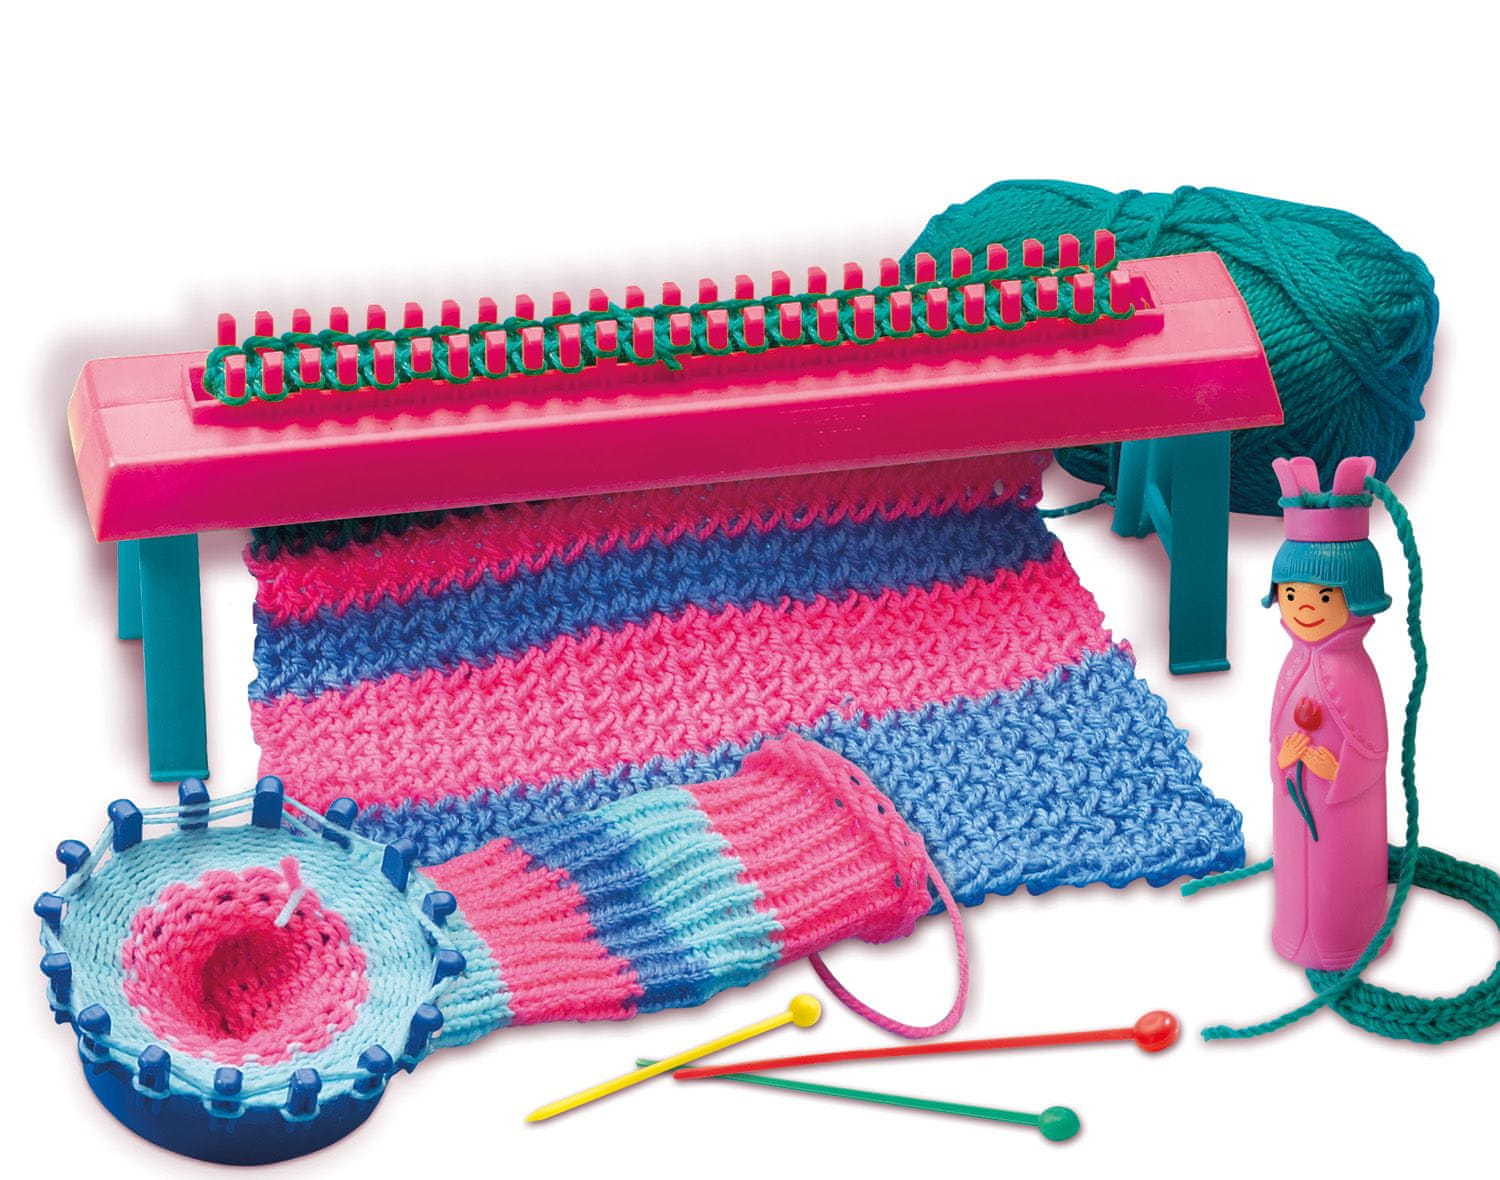 Купить машинку для вязания. Вязальная машинка Knitting Machine сентро. Вязальный станок римок Джей 490. Вязальная машина Knitmaster-150. Вязальная машина детская Centro.